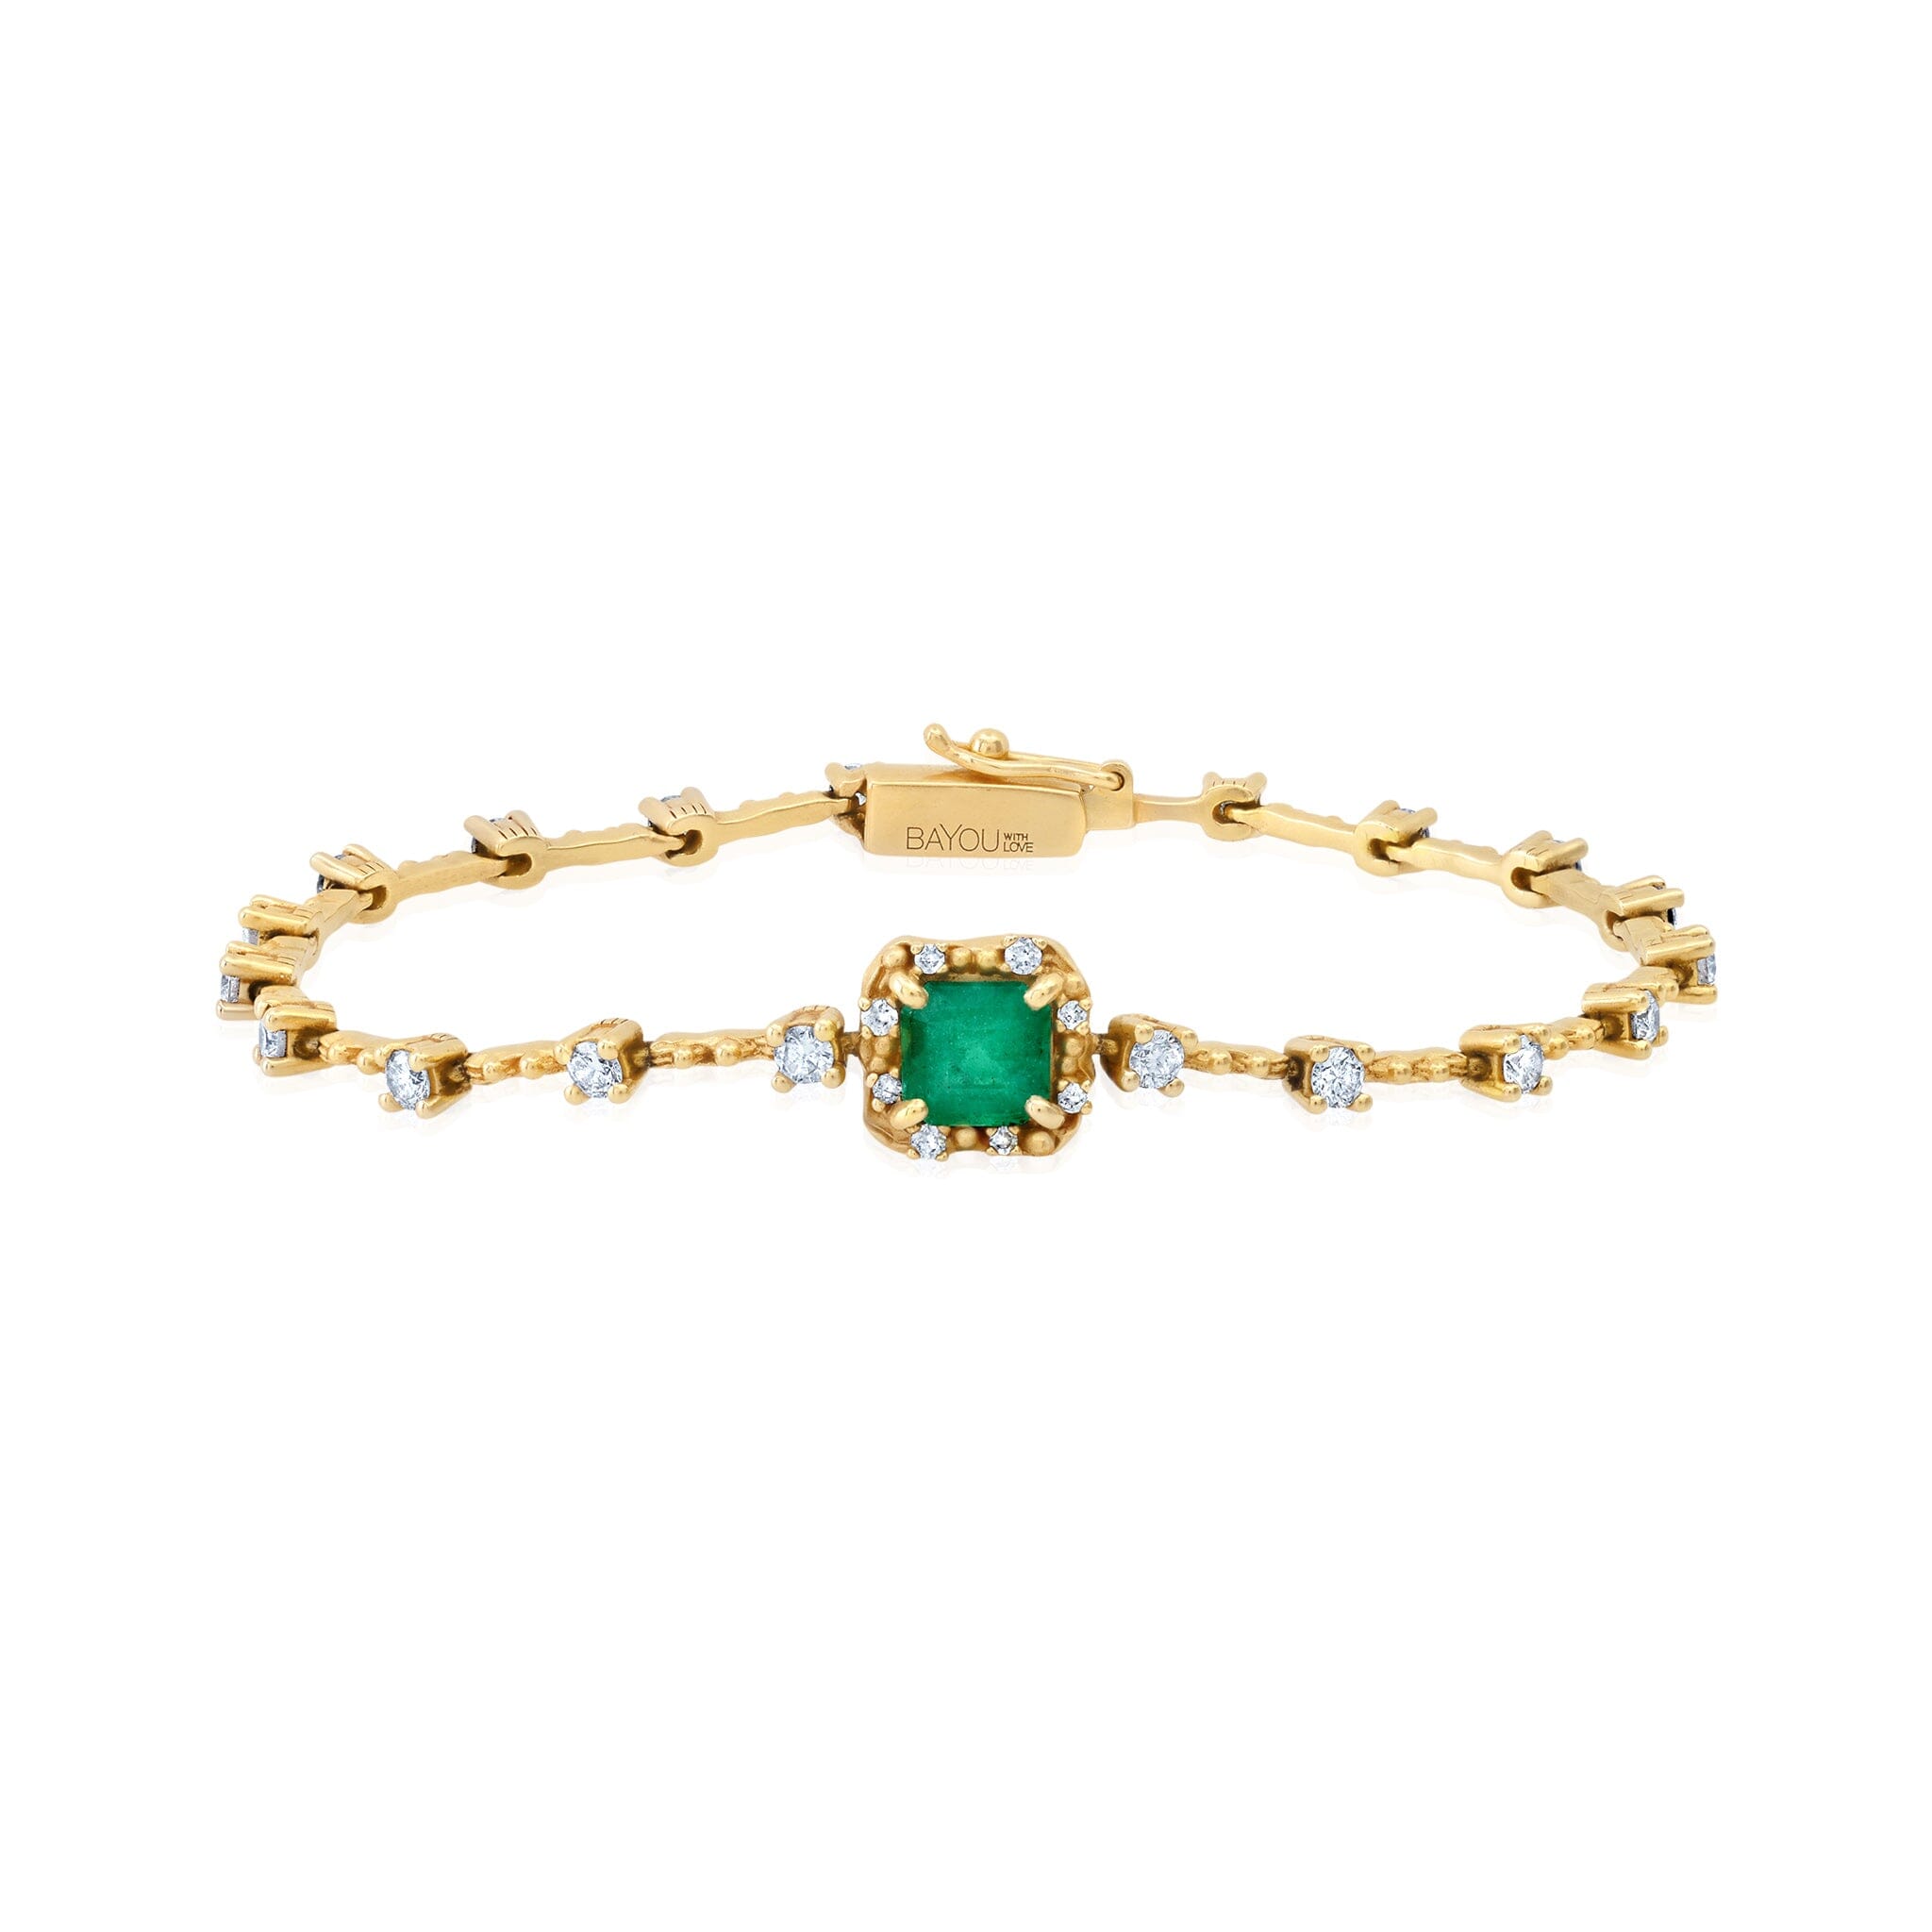 NEW Diamond Water Emerald Bracelet Jewelry Bayou with Love 